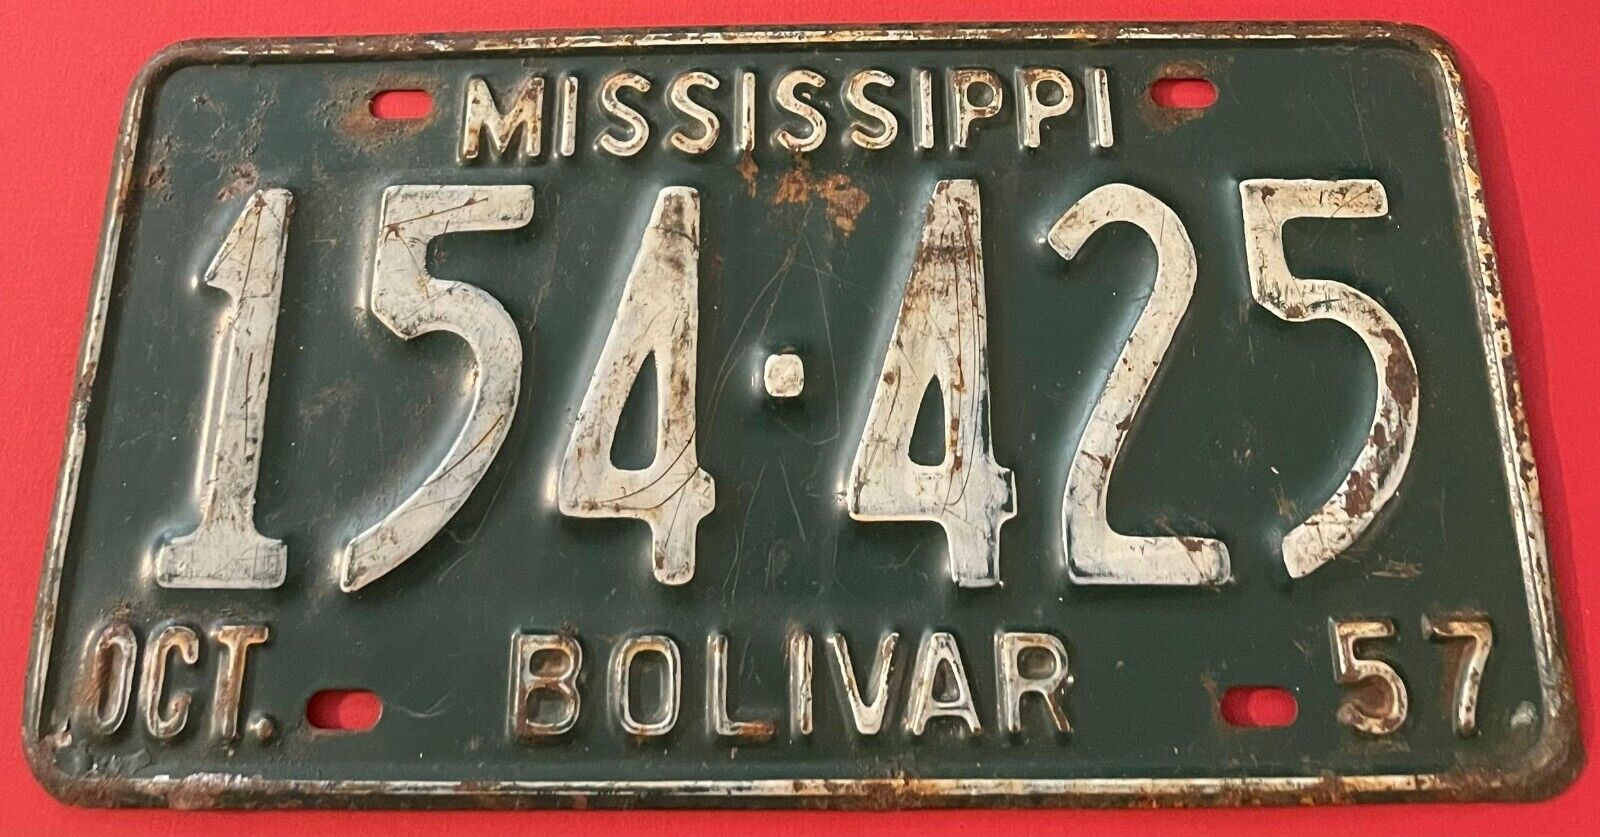 Vintage 1957 Mississippi License Plate 154-425 Bolivar County Cleveland Shelby